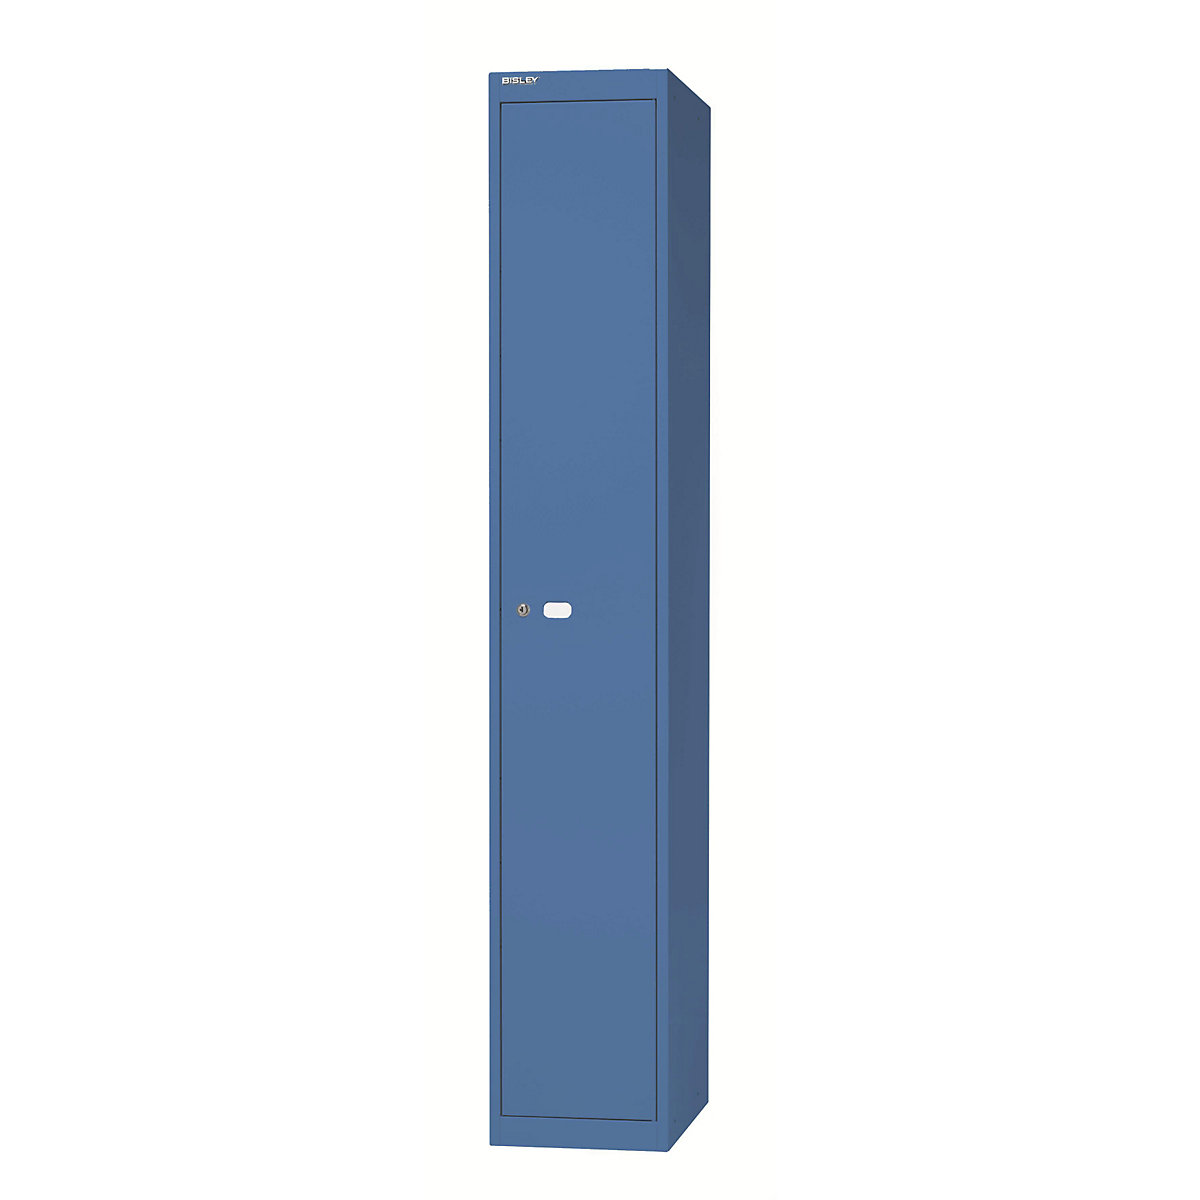 BISLEY OFFICE Garderobensystem, 1 Abteil, Tiefe 305 mm, mit 1 Hutfachboden, 1 Kleiderhaken, blau